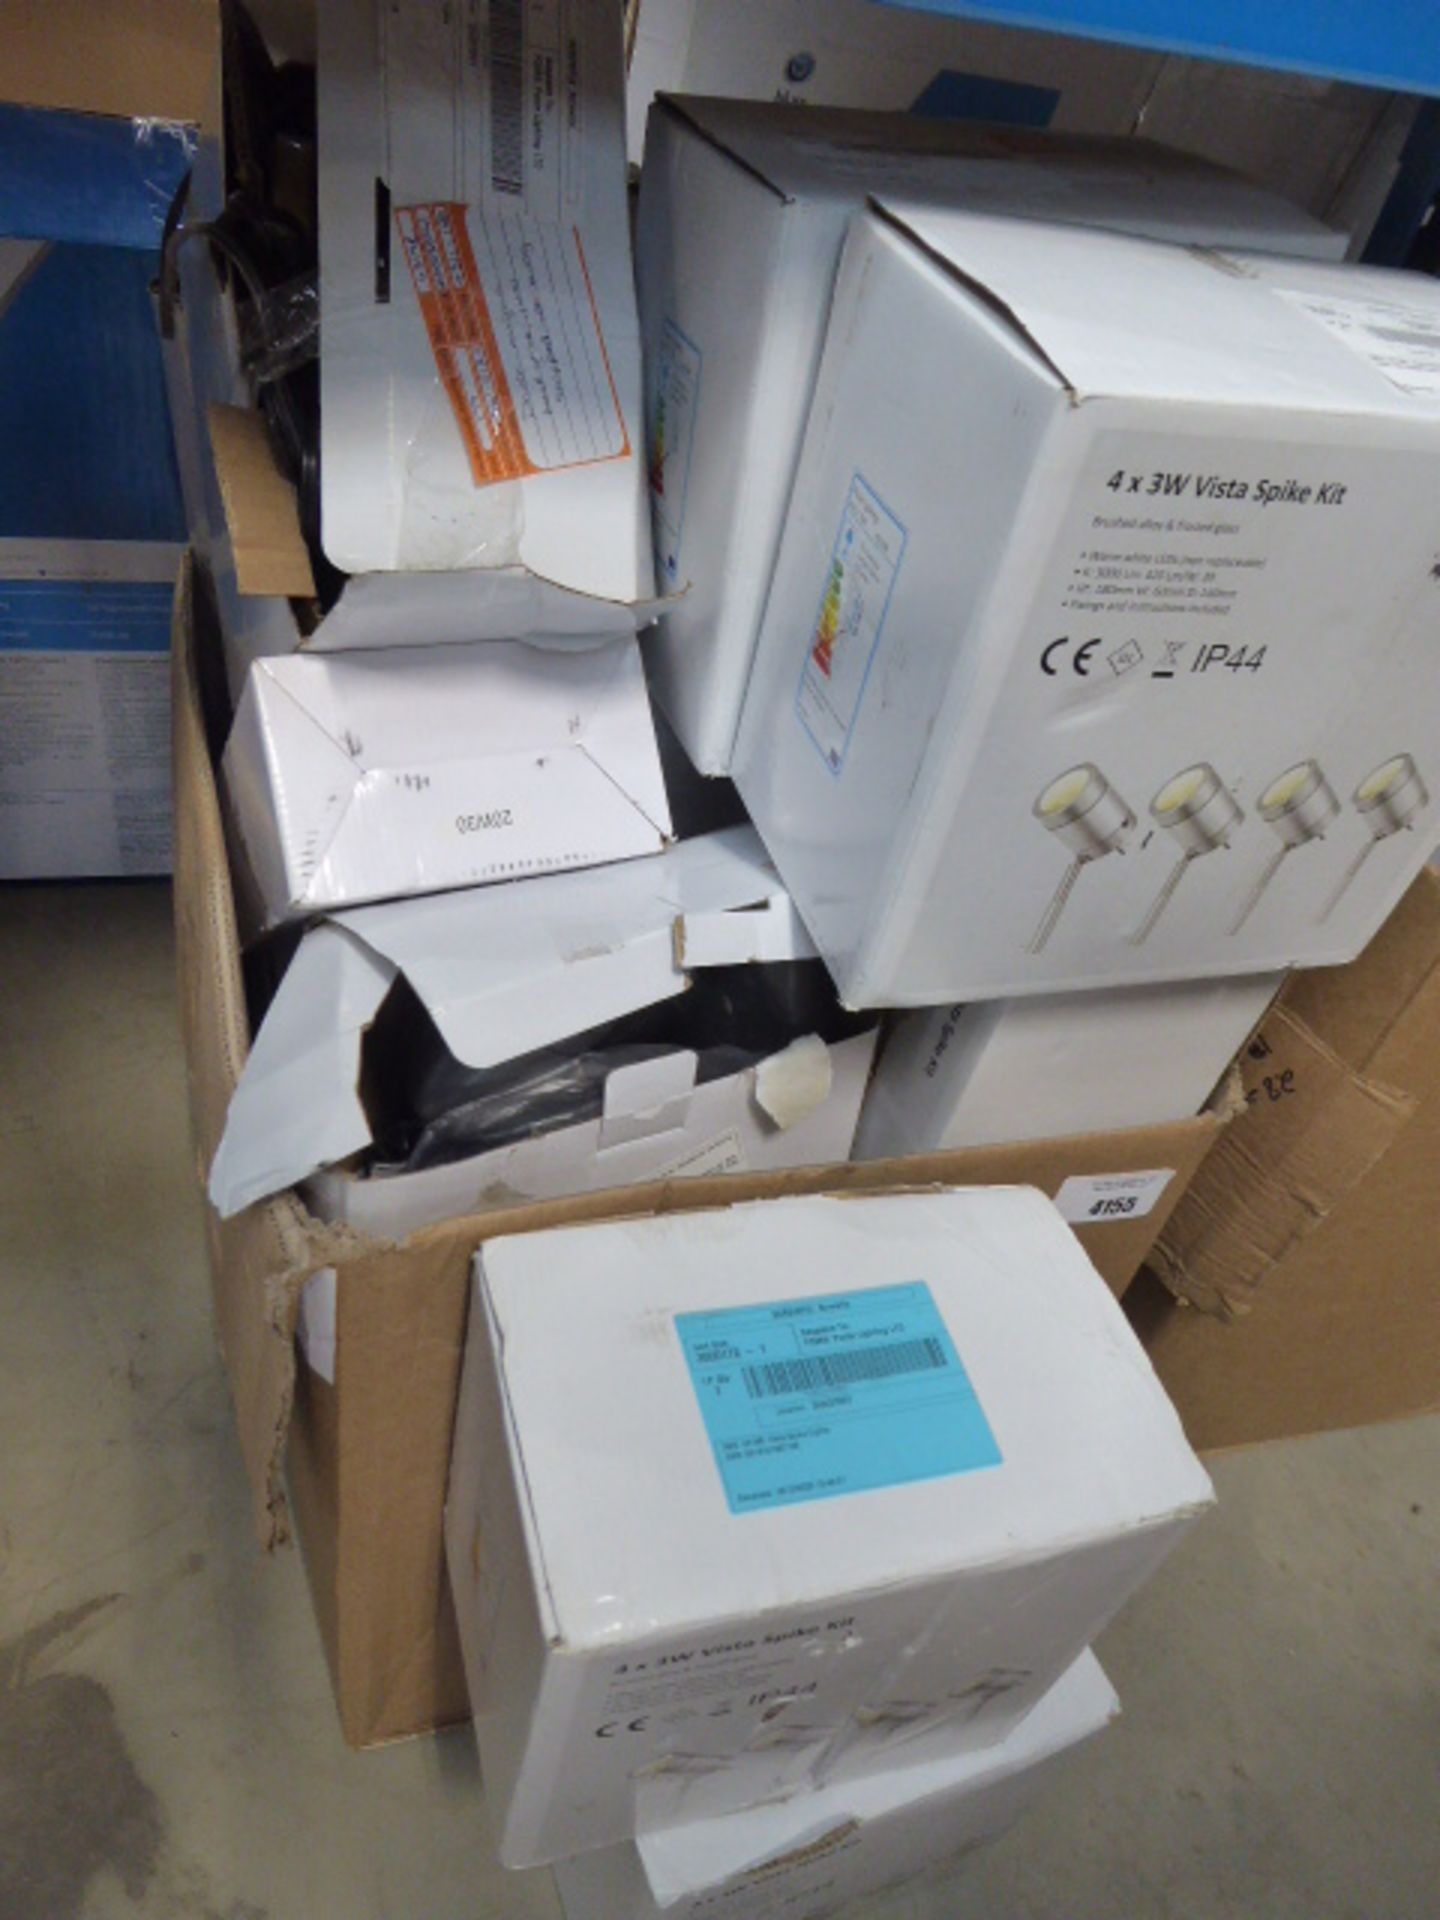 Large box of Vista spike kit lights - Image 2 of 2